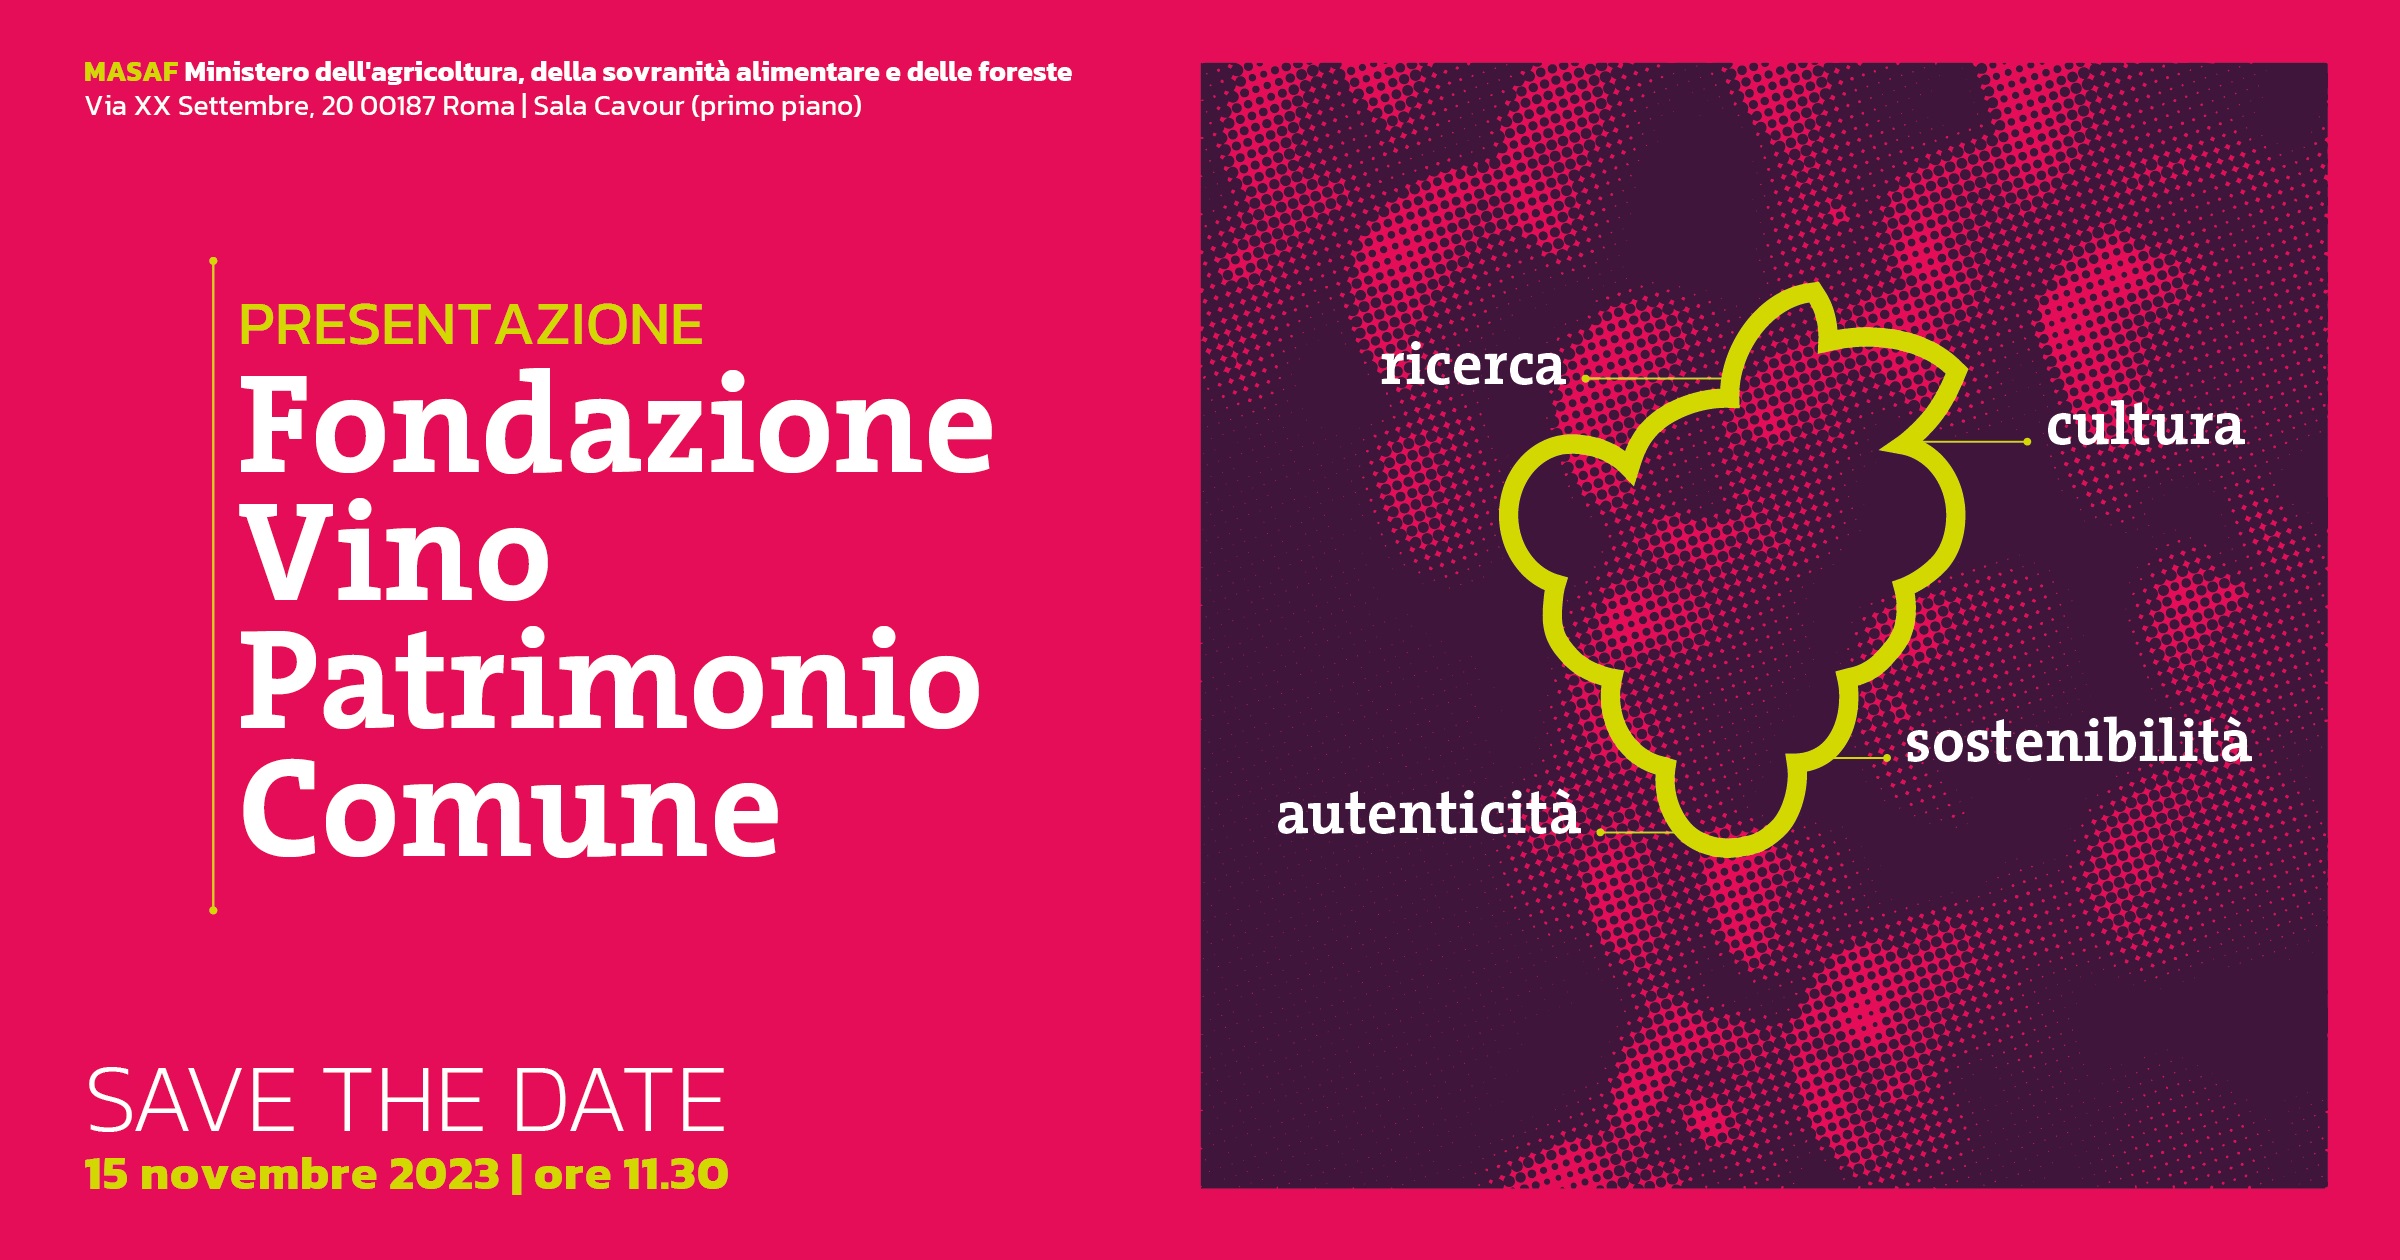 Nasce ASSIEME, la linea di vini frutto della collaborazione tra Legacoop Agroalimentare, le sue associate e Coop Italia